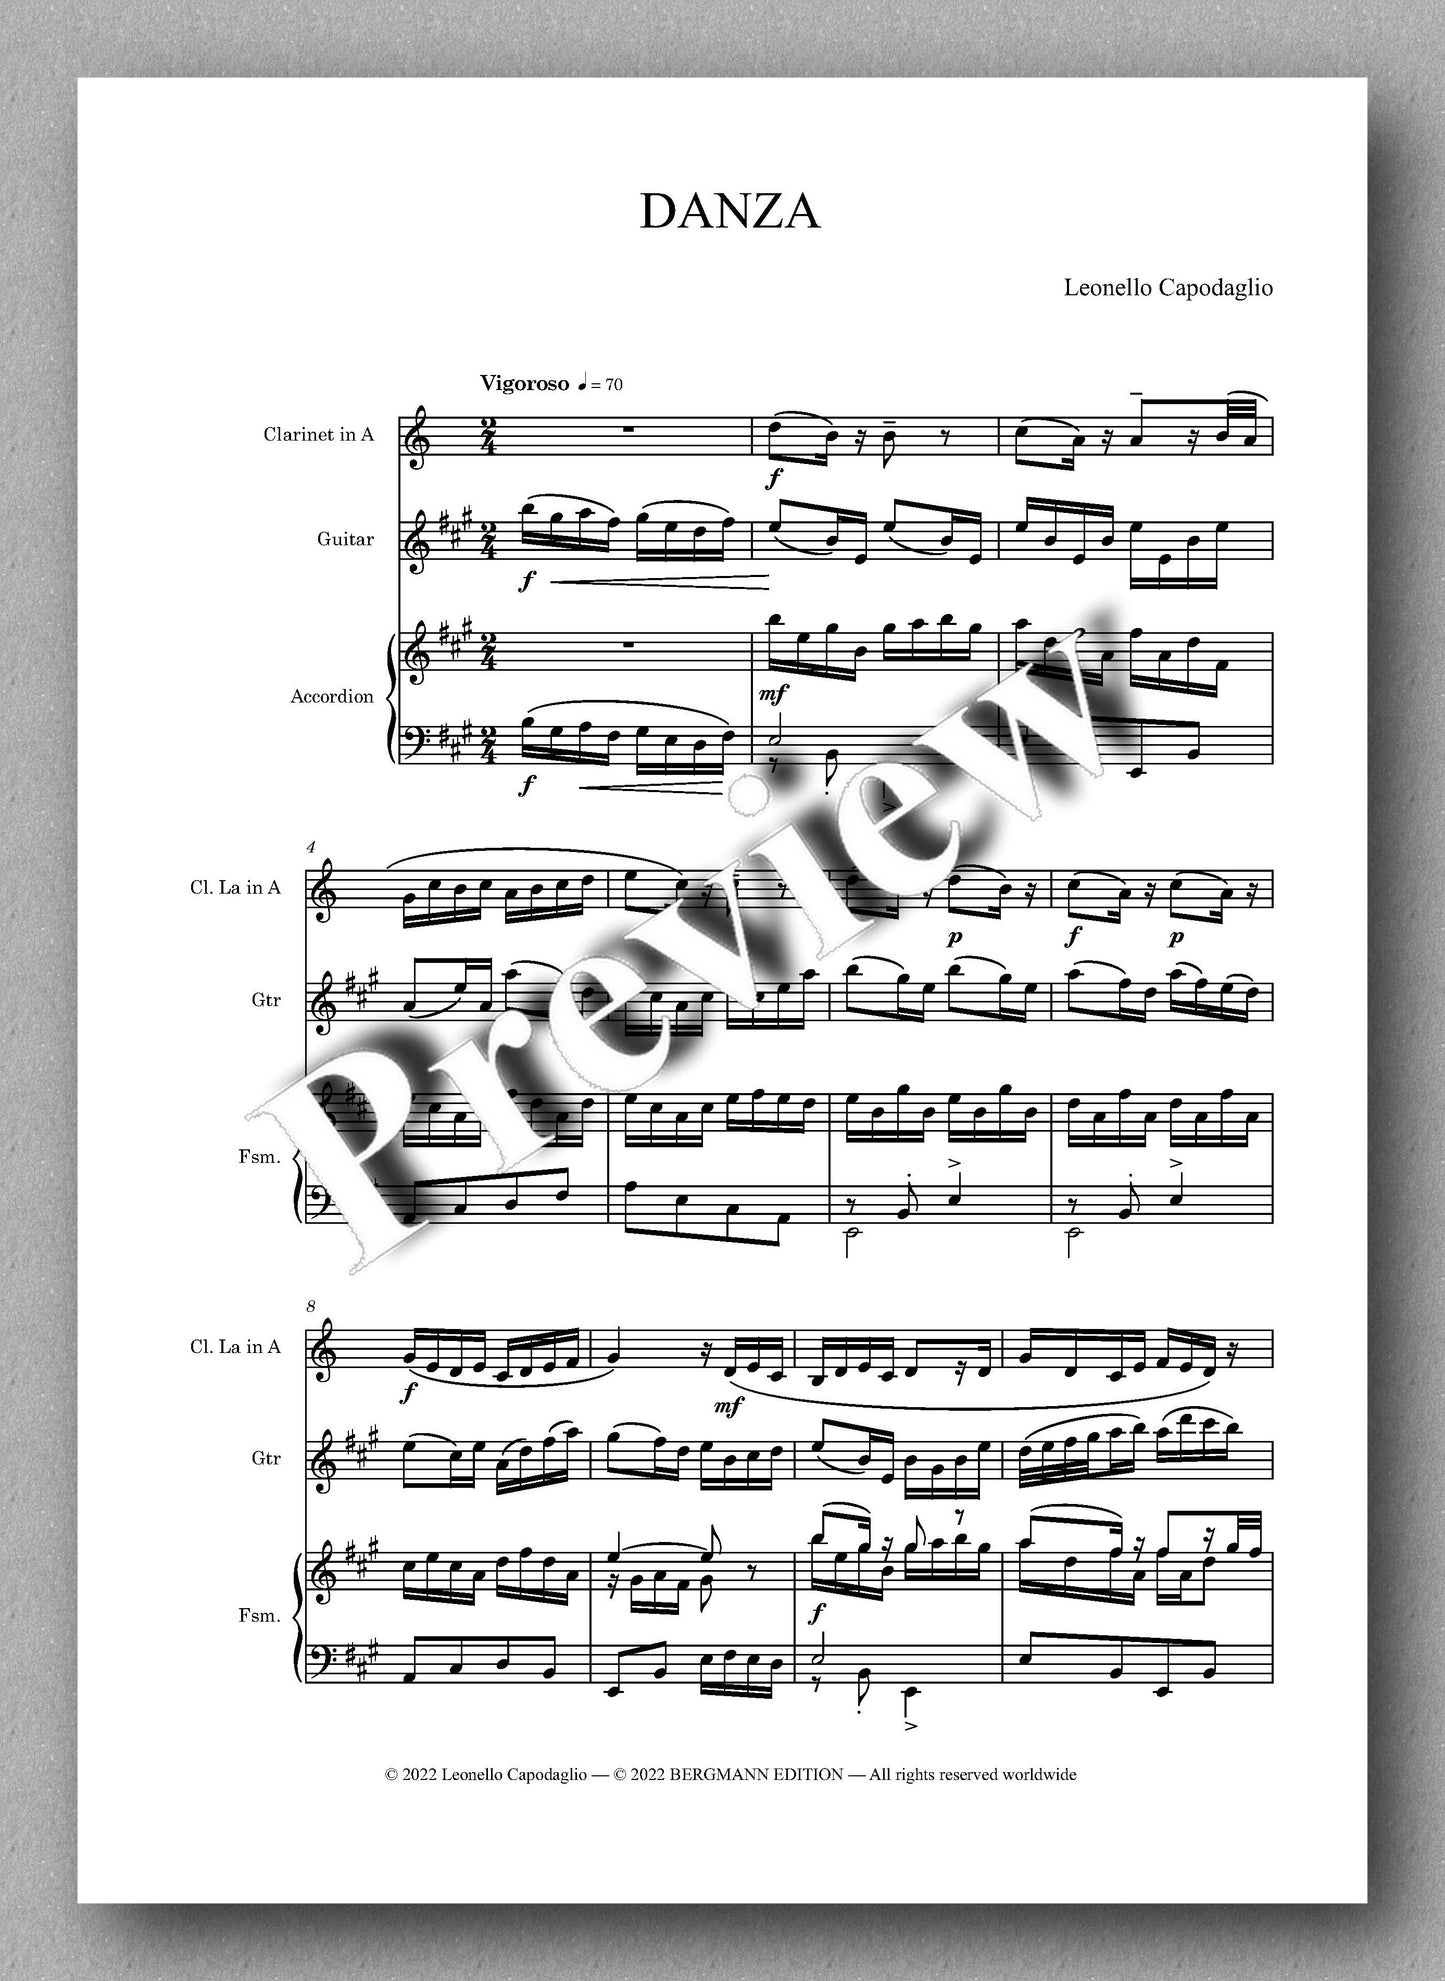 DANZA Op. 512 by  Leonello Capodaglio - preview of the music score 1